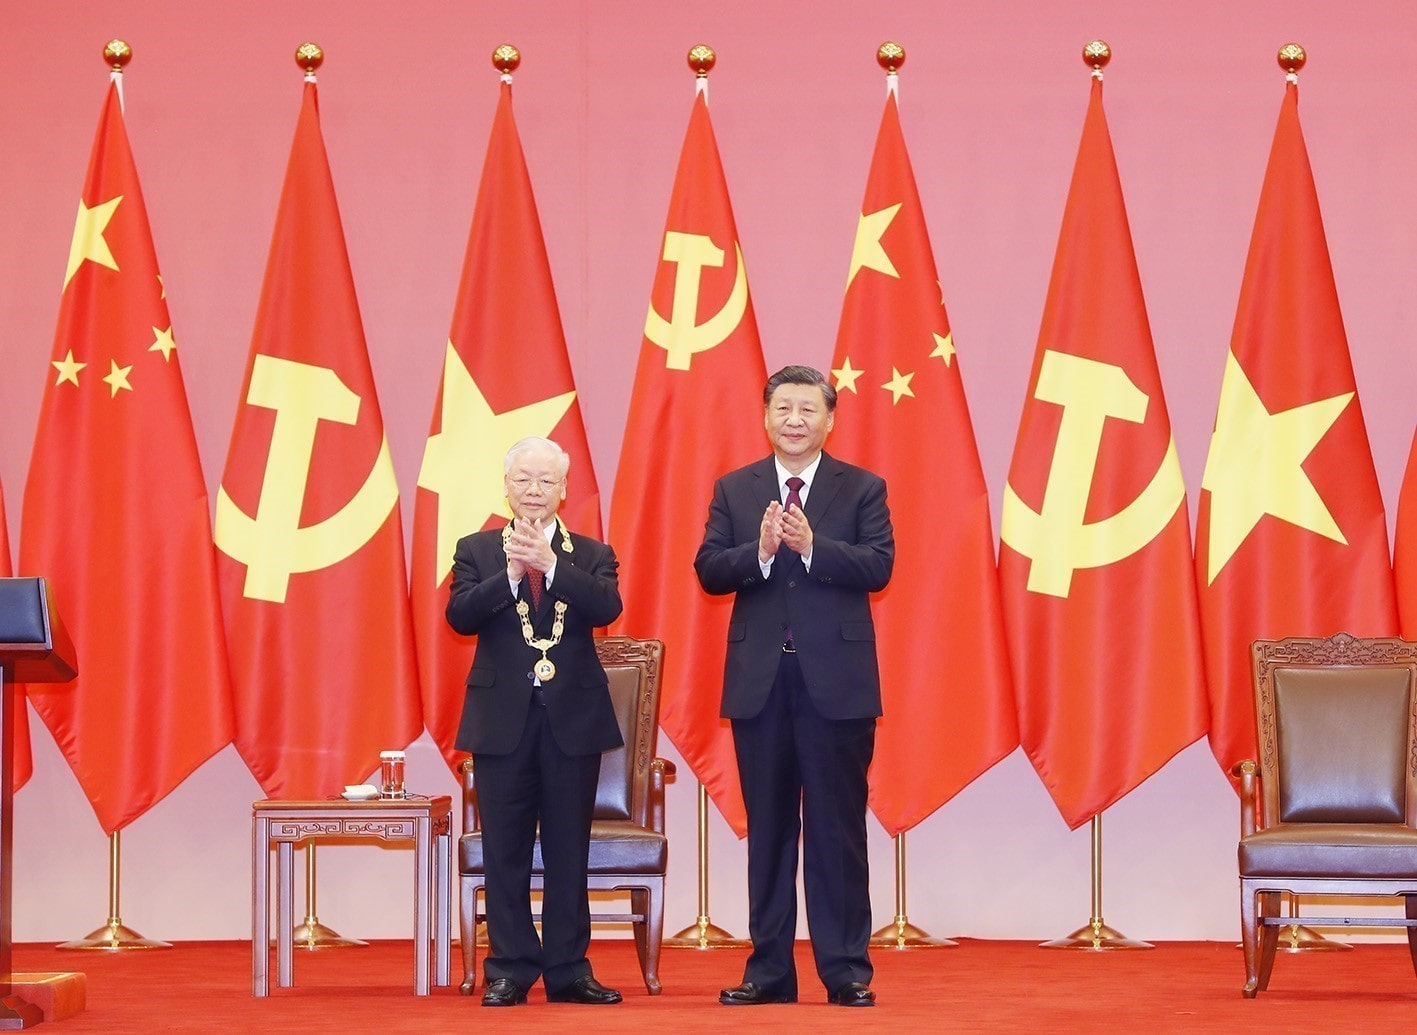 Tổng Bí thư, Chủ tịch Trung Quốc Tập Cận Bình trao Huân chương Hữu nghị tặng Tổng Bí thư Nguyễn Phú Trọng, nhân chuyến thăm của Tổng Bí thư Nguyễn Phú Trọng tới Trung Quốc.